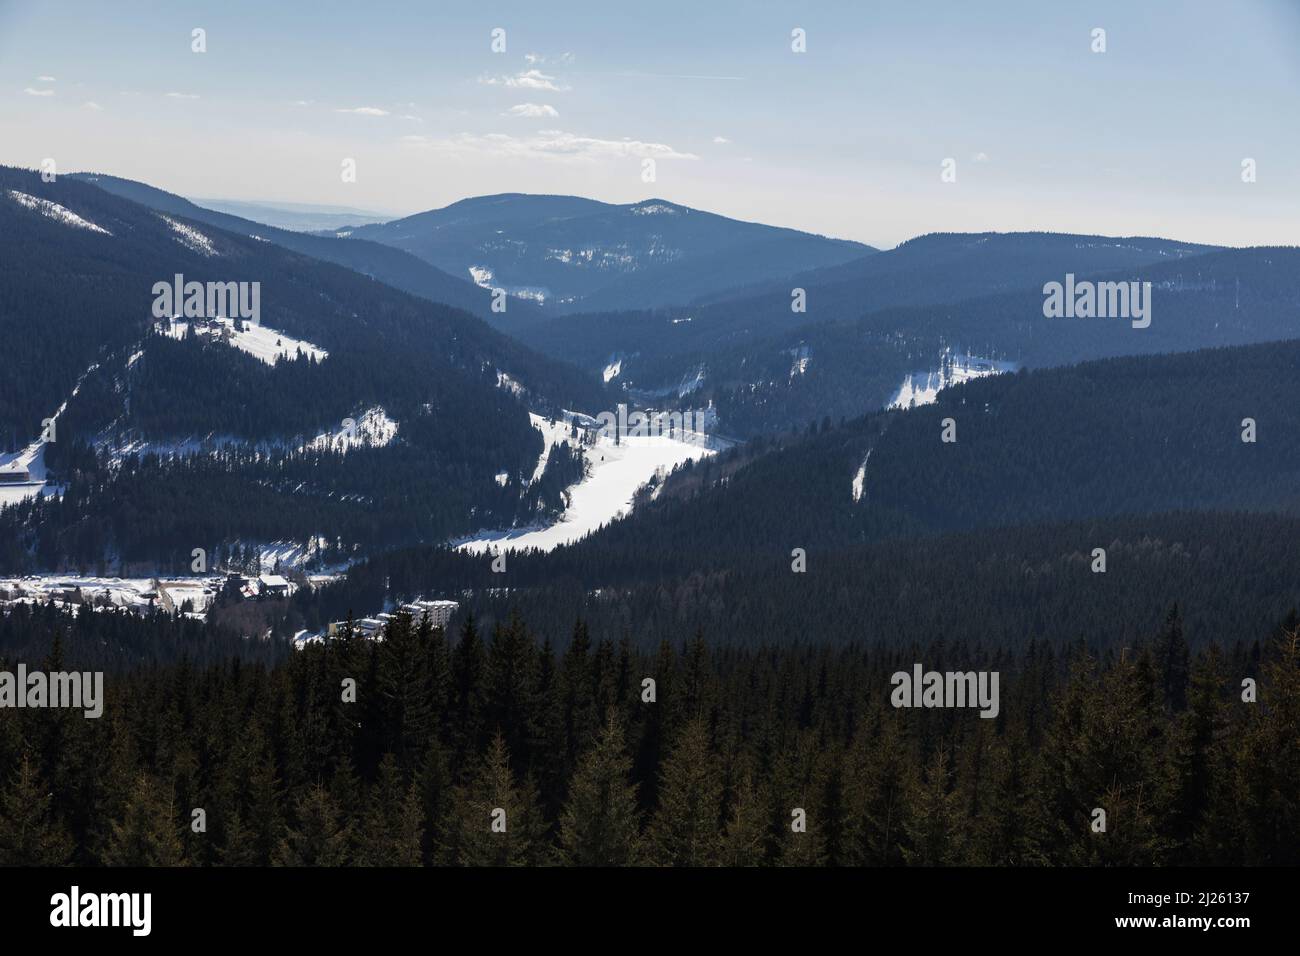 Vista de la estación de esquí Spindleruv Mlyn en la montaña Krkonose desde la cima de la colina Medvedin. Estación de esquí de invierno Spindleruv mlyn, pistas de avión y Hromovk Foto de stock